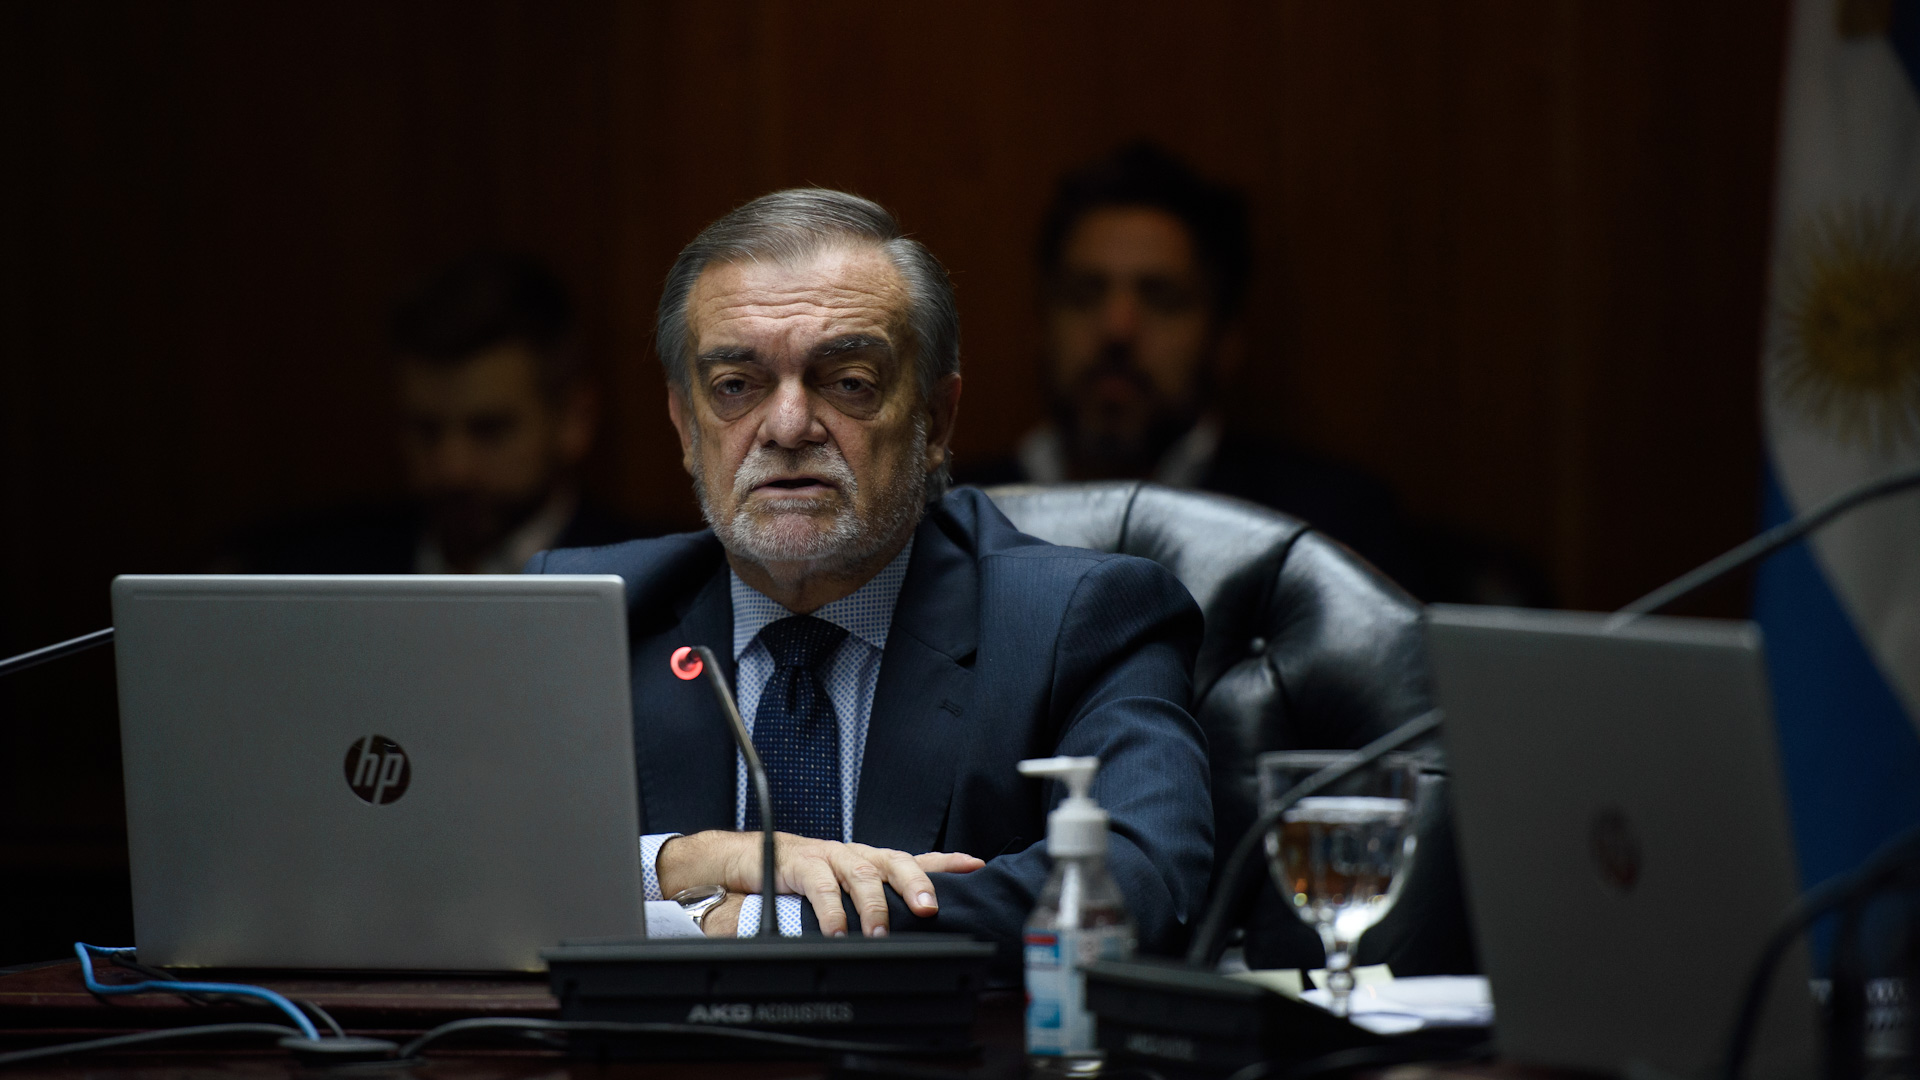 El consejero y presidente del Consejo, Alberto Lugones: "Si la Corte mañana asume sería una especie de intervención"